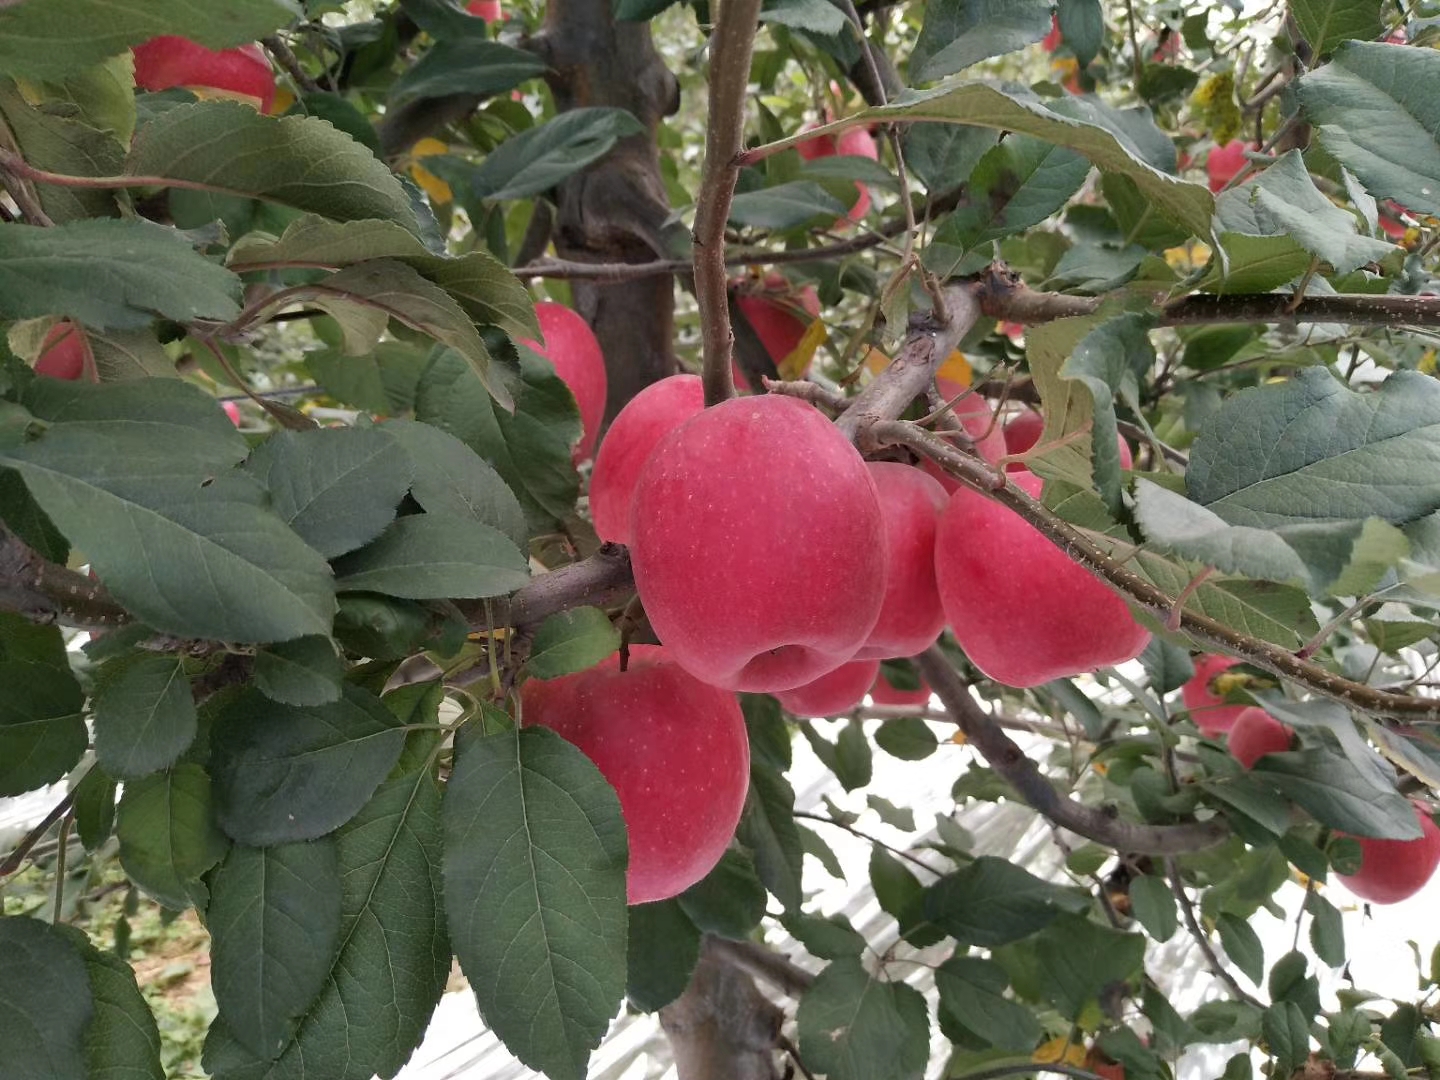 基地直销瑞香红苹果树苗 产量高 果实丰厚价格低诚信经营